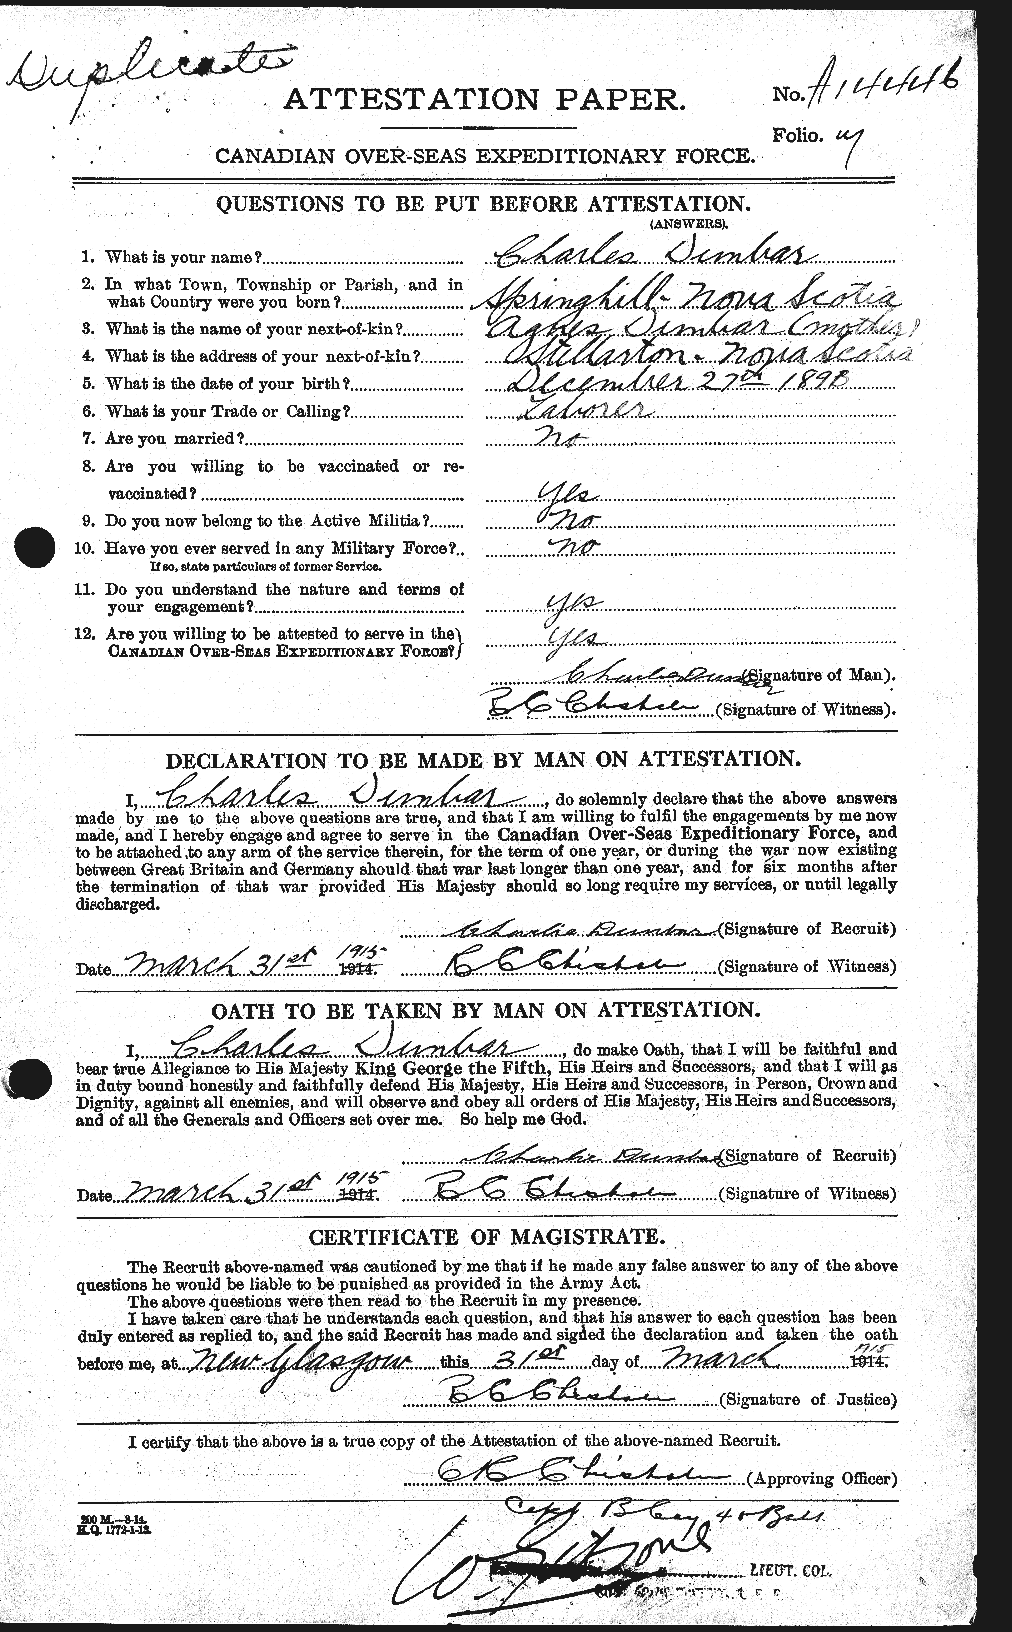 Dossiers du Personnel de la Première Guerre mondiale - CEC 301469a